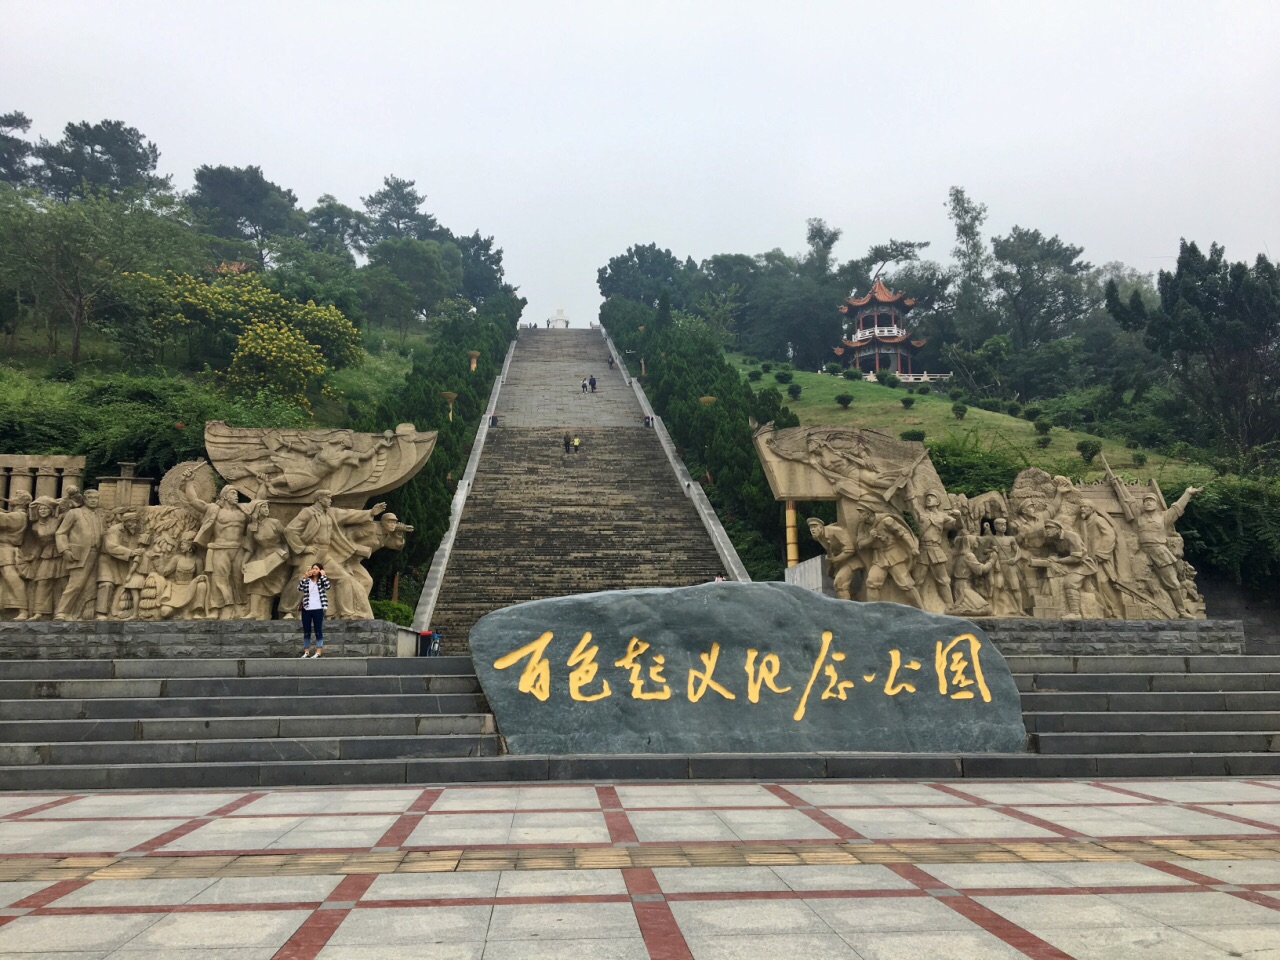 【携程攻略】重庆歌乐山烈士陵园景点,“歌乐山烈士陵园”，坐落于重庆市歌乐山麓，到重庆，来这里凭吊、缅…